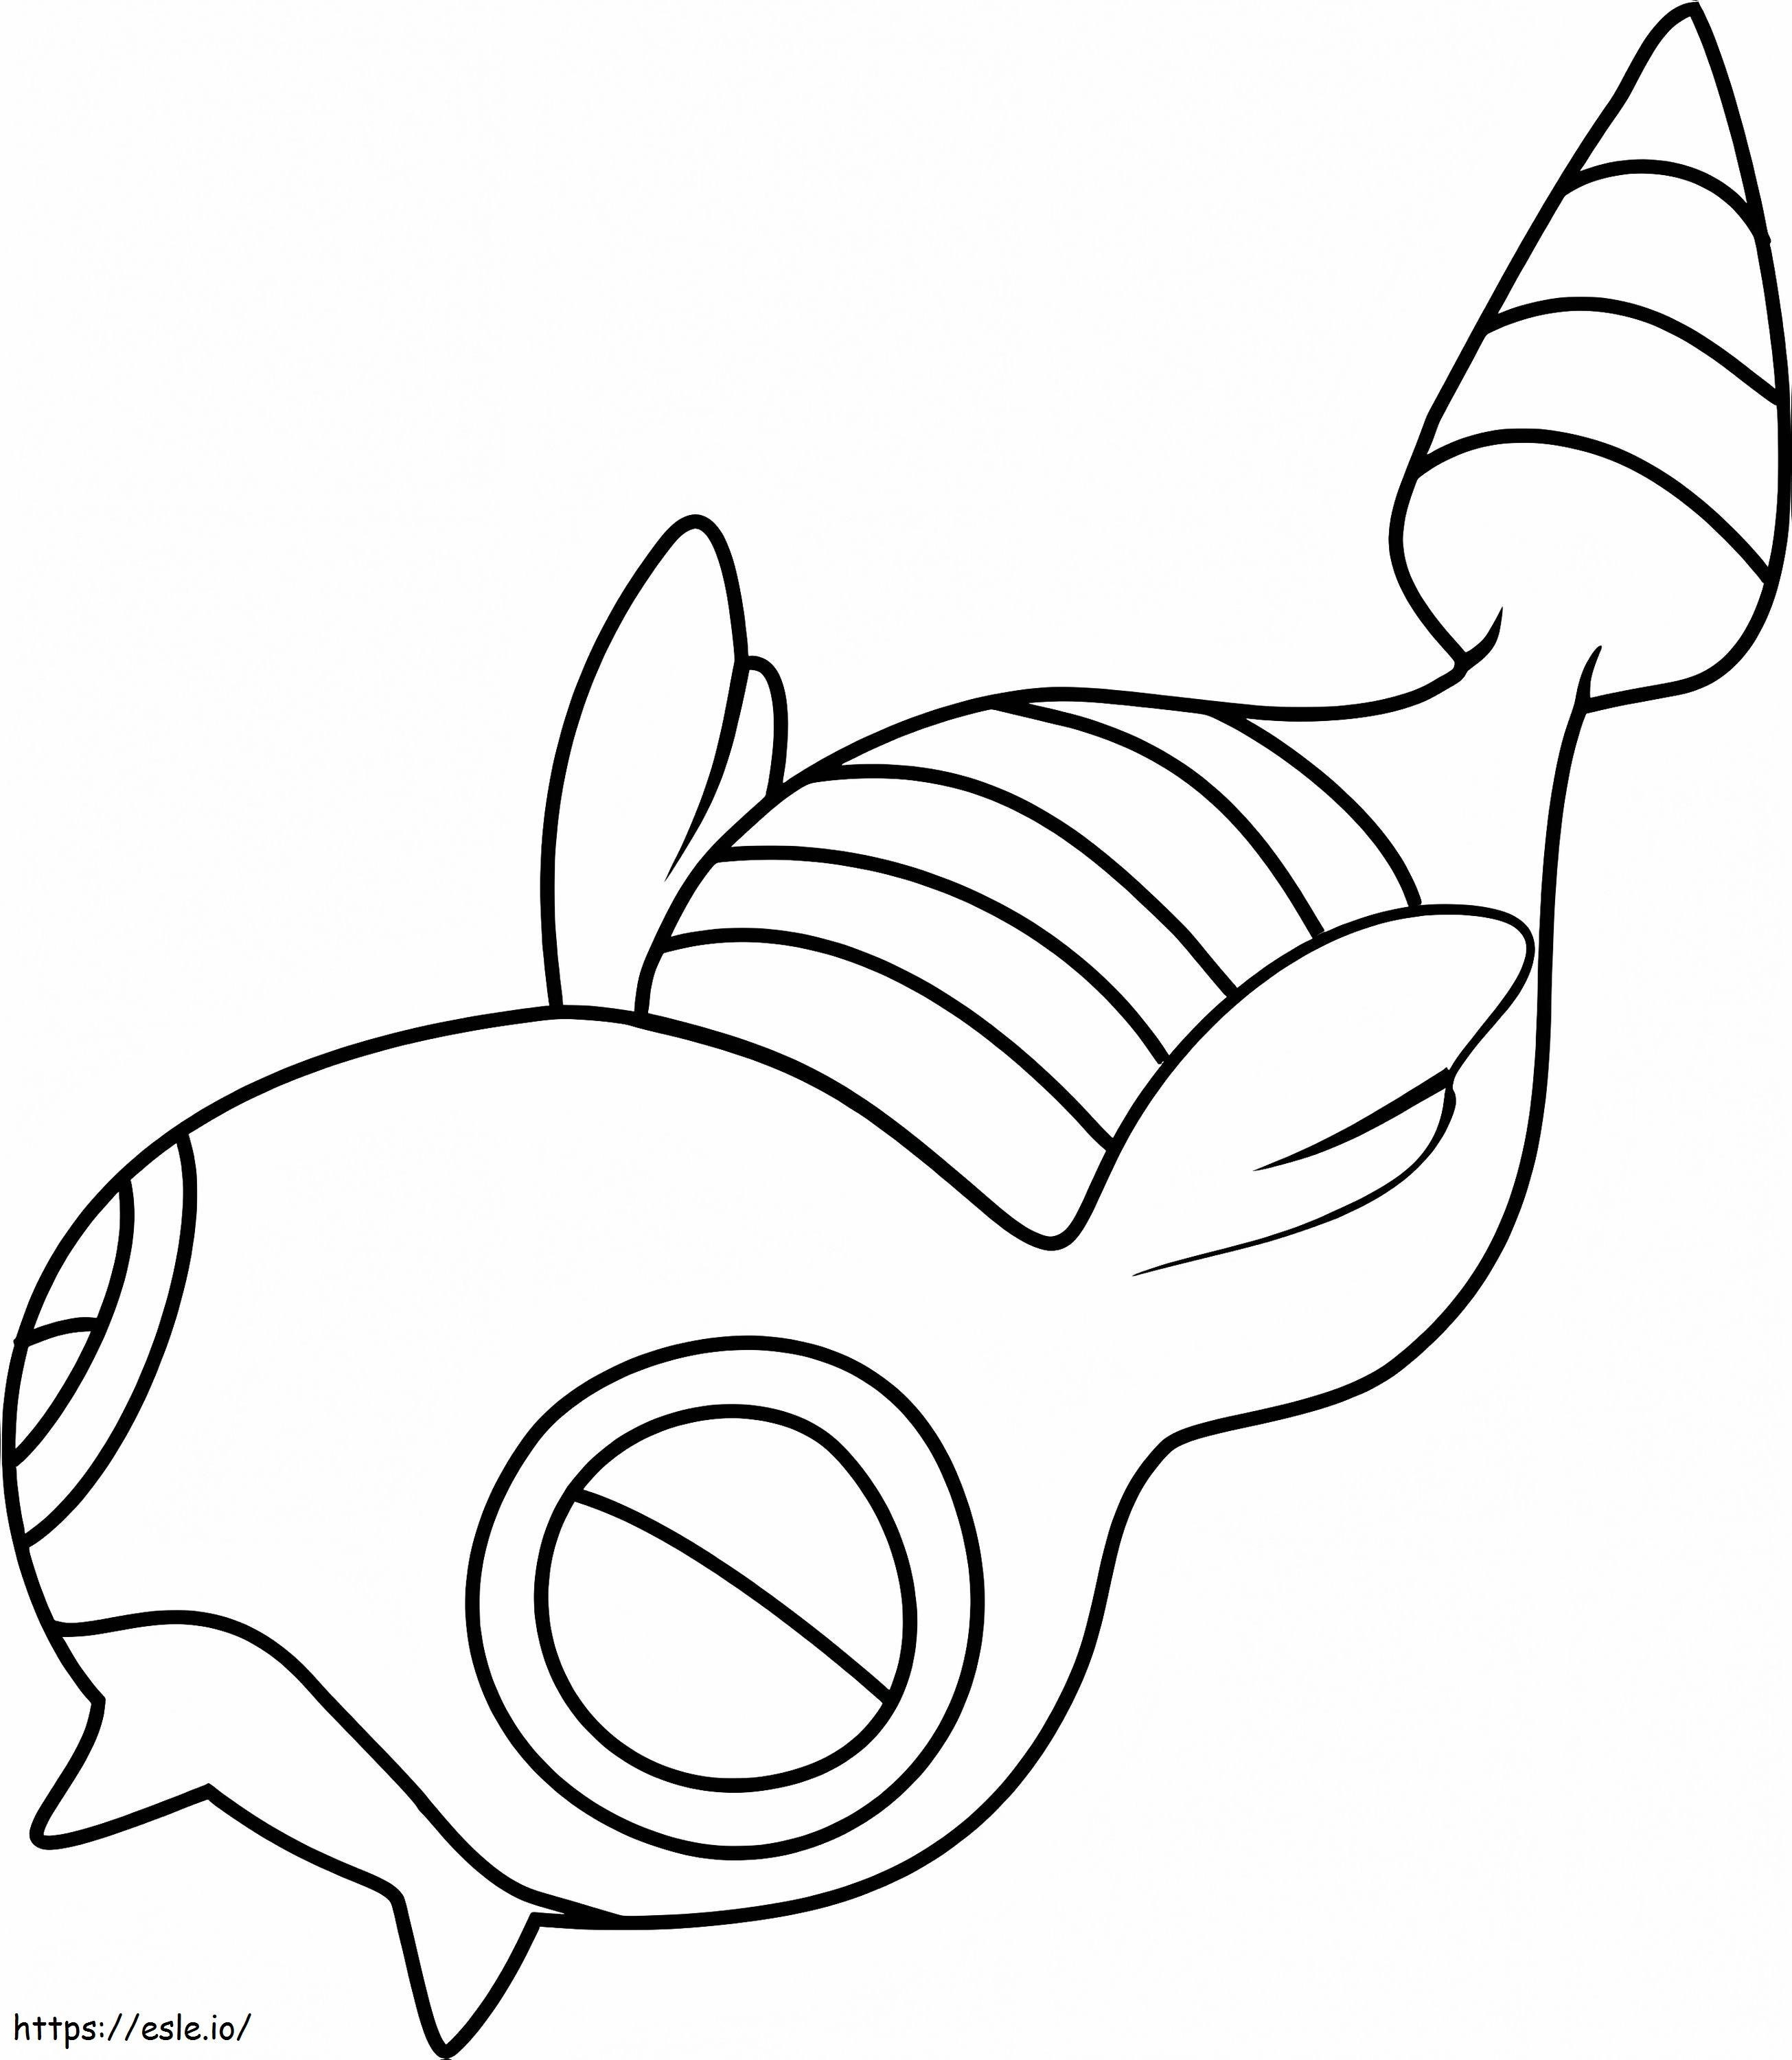 Coloriage Pokémon Dunsparce Gen 2 à imprimer dessin